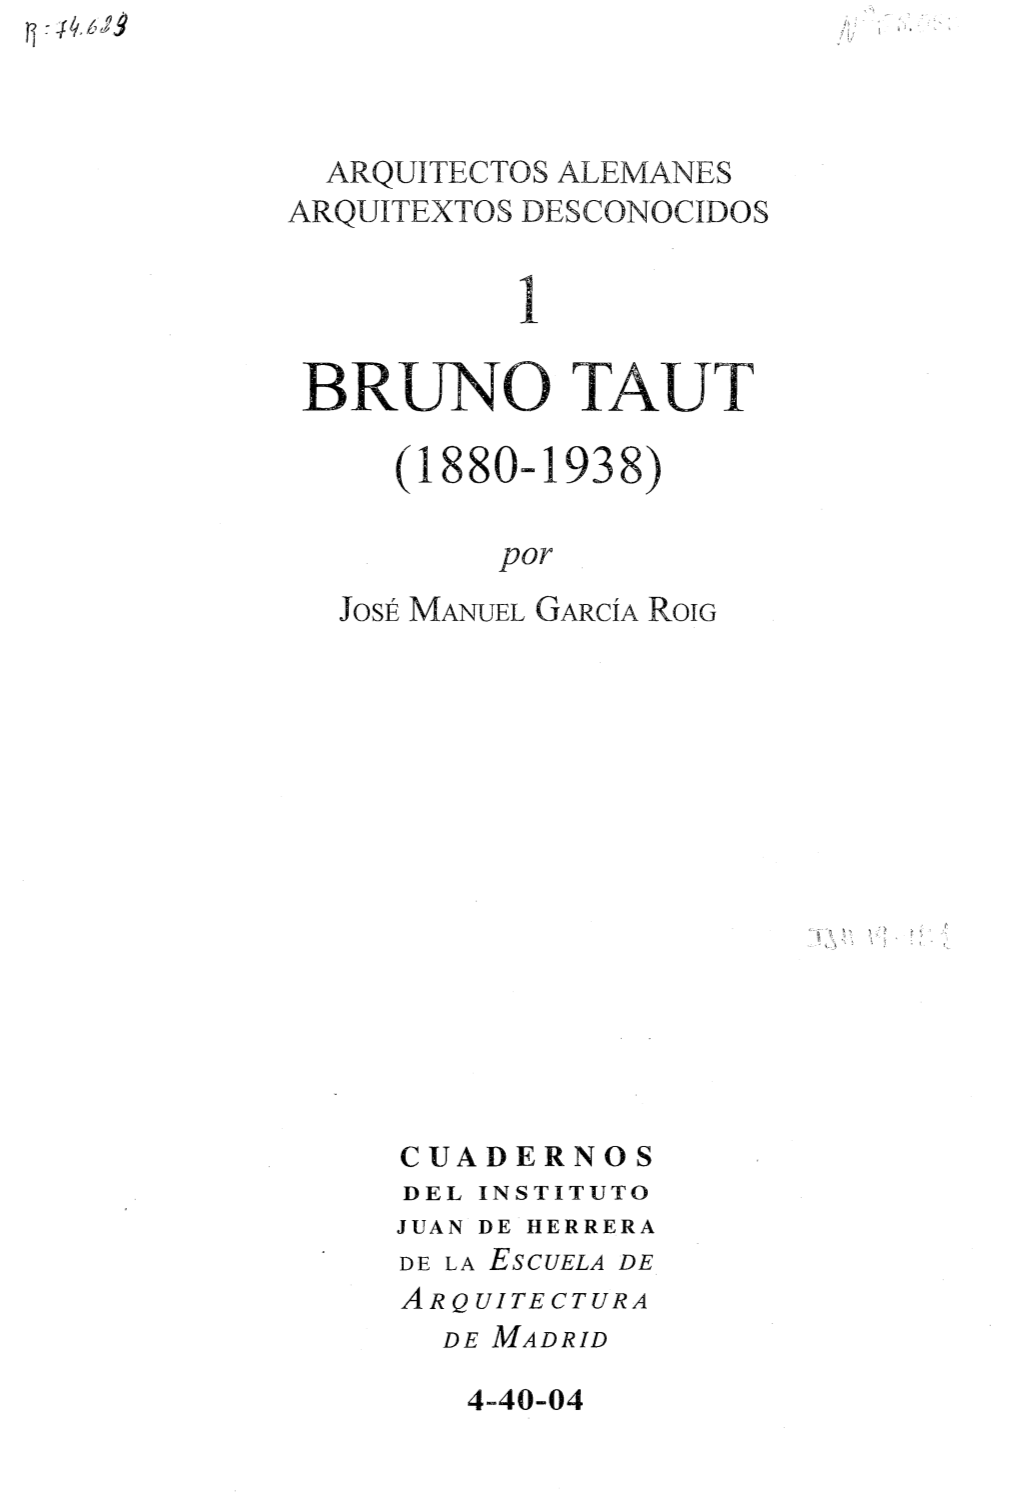 Brunotaut (1880-1938)